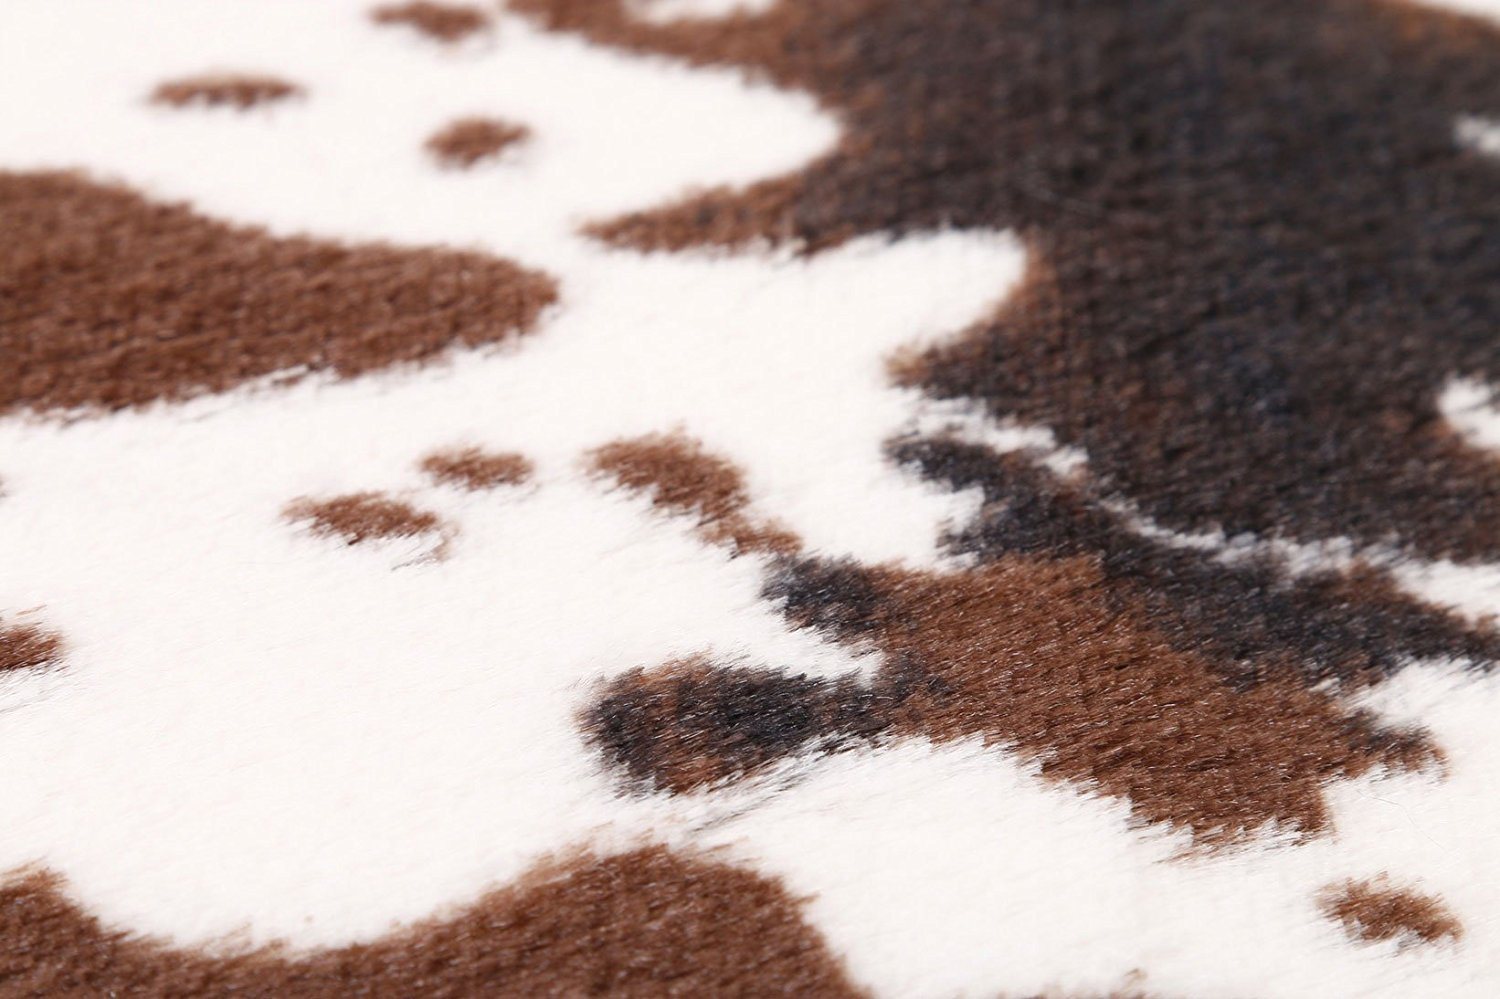 cute cow print rug 4 - The Cow Print